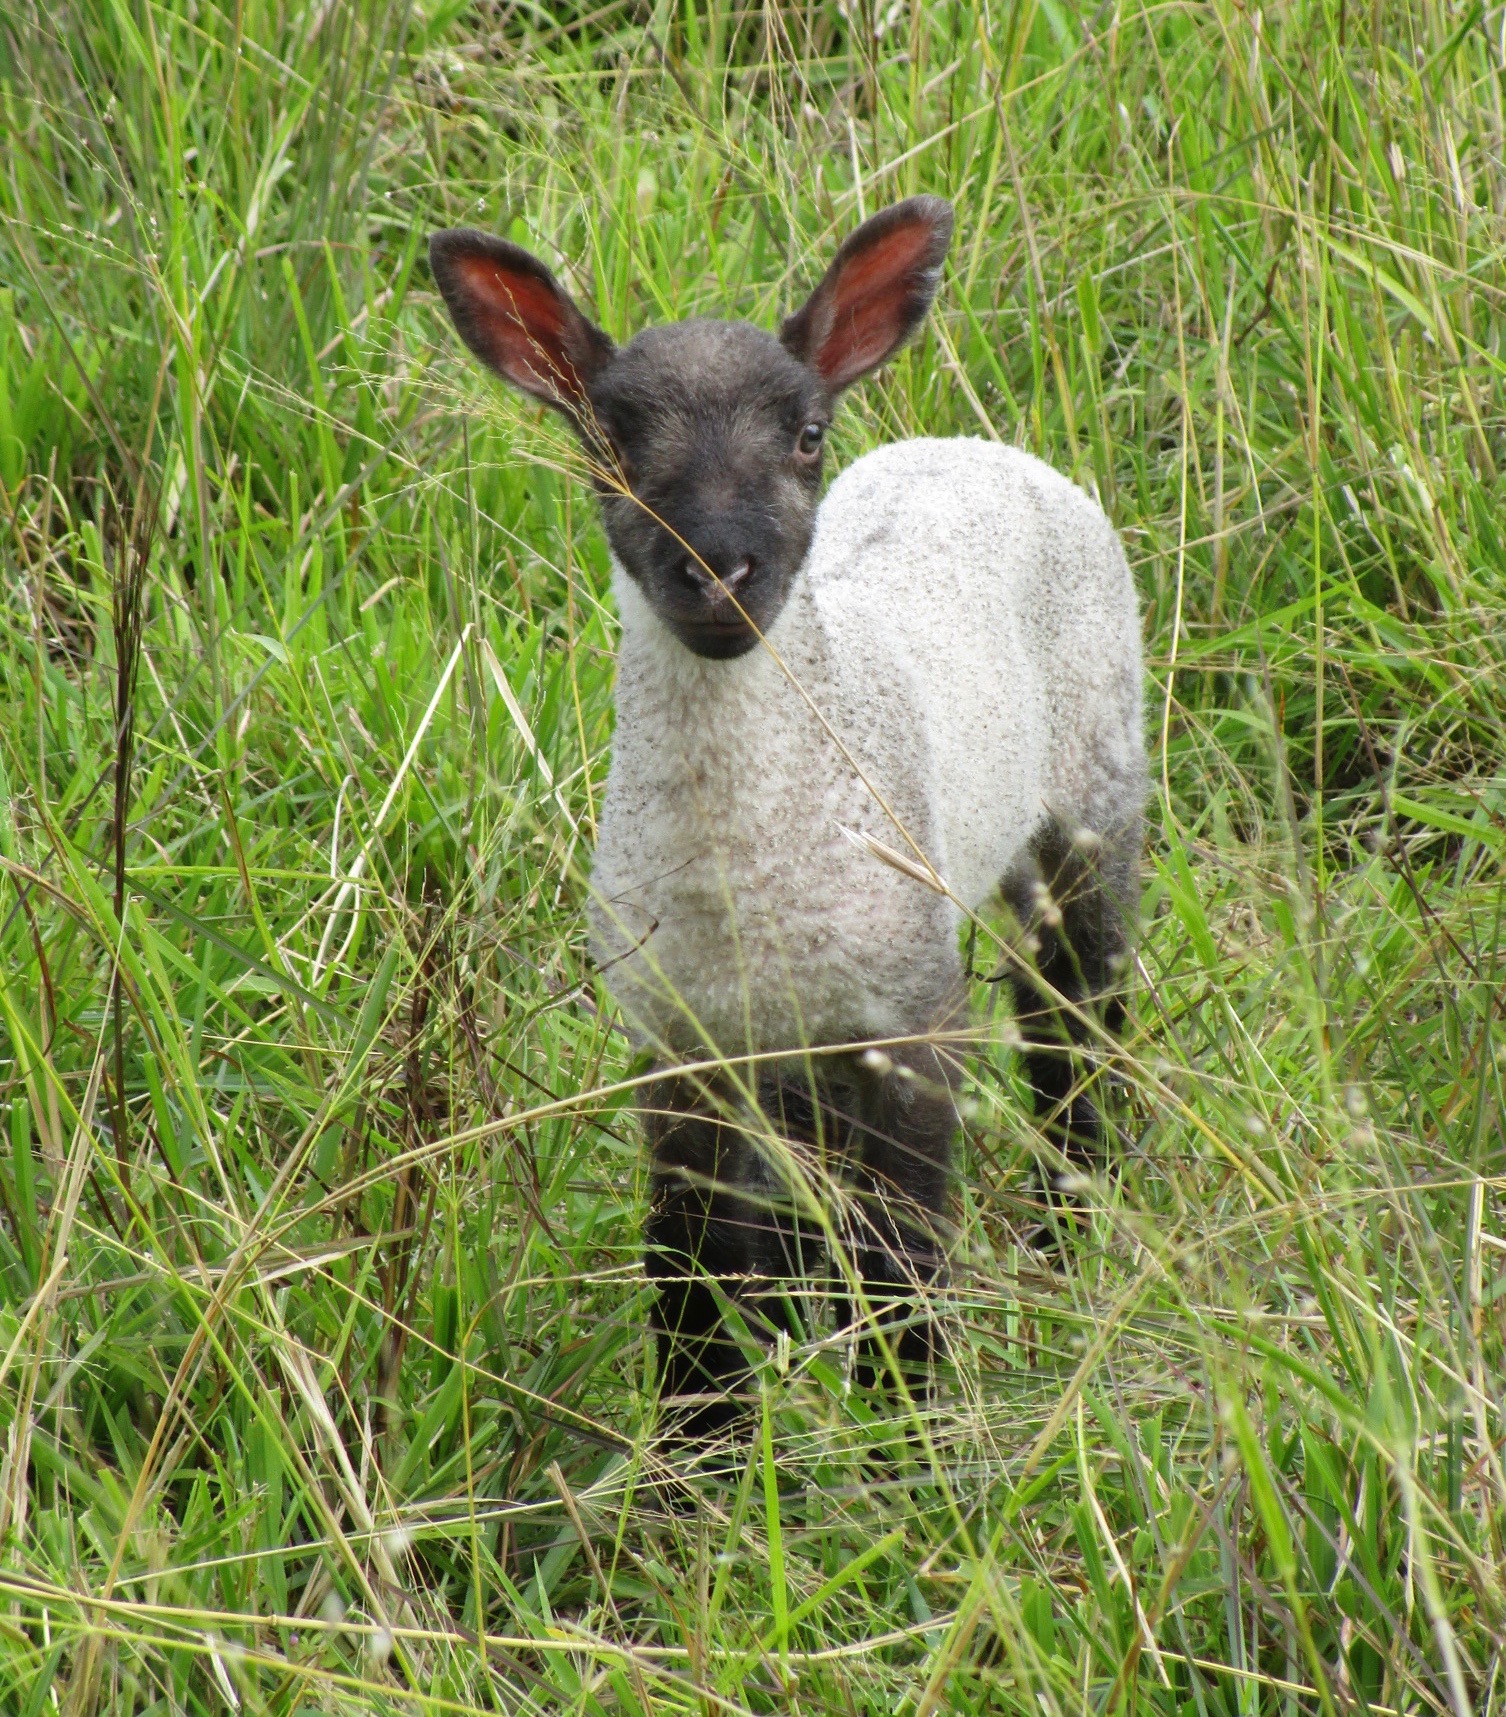 Ewe lamb at 10 days old